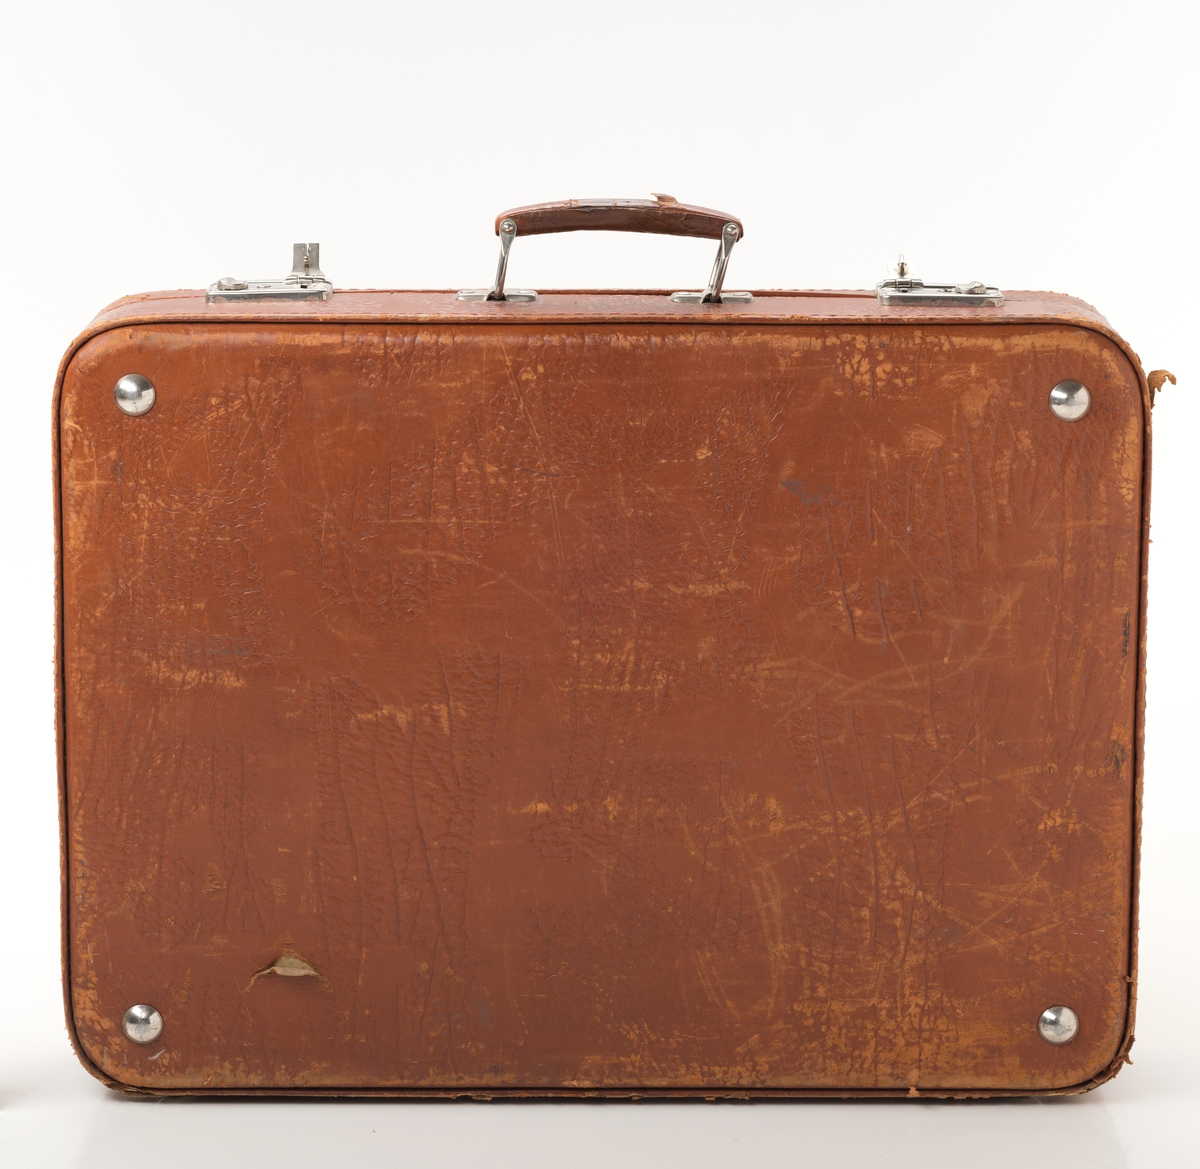 Rektangulær koffert i brunt skinn med ett rom. Innheolder fem uttagbare brett tilpasset koffertens fasong til oppbevaring av småporteføje.